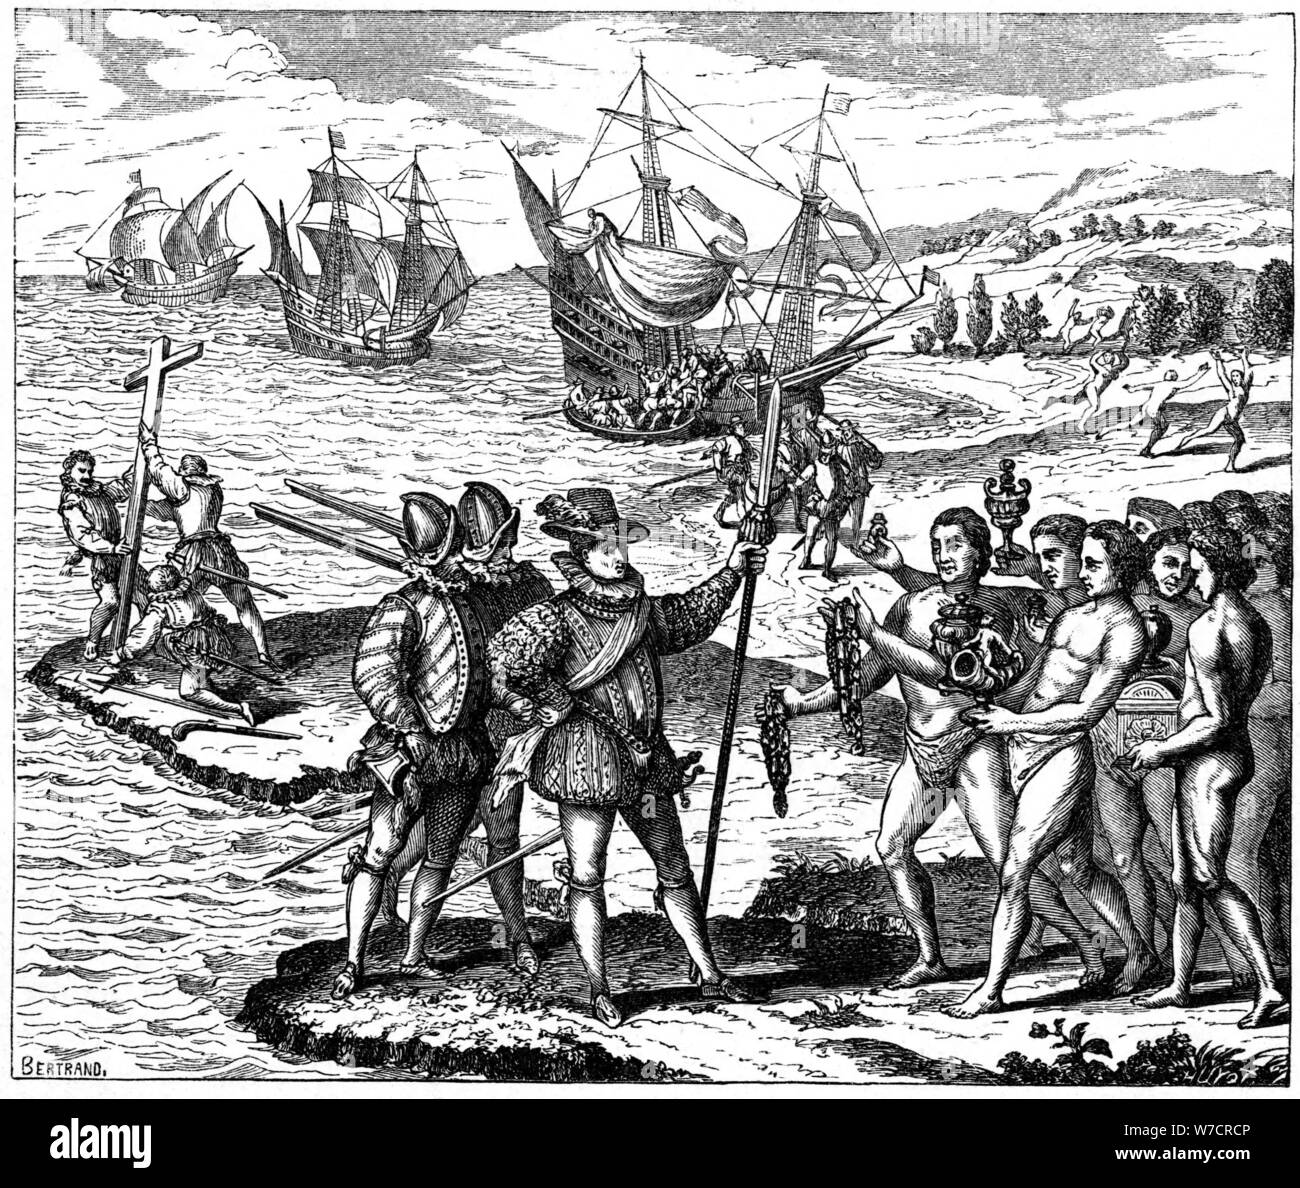 Christophe Colomb, l'explorateur génois, à la découverte de l'Amérique, 12 mai 1492 (1590). Artiste : Theodor de Bry Banque D'Images